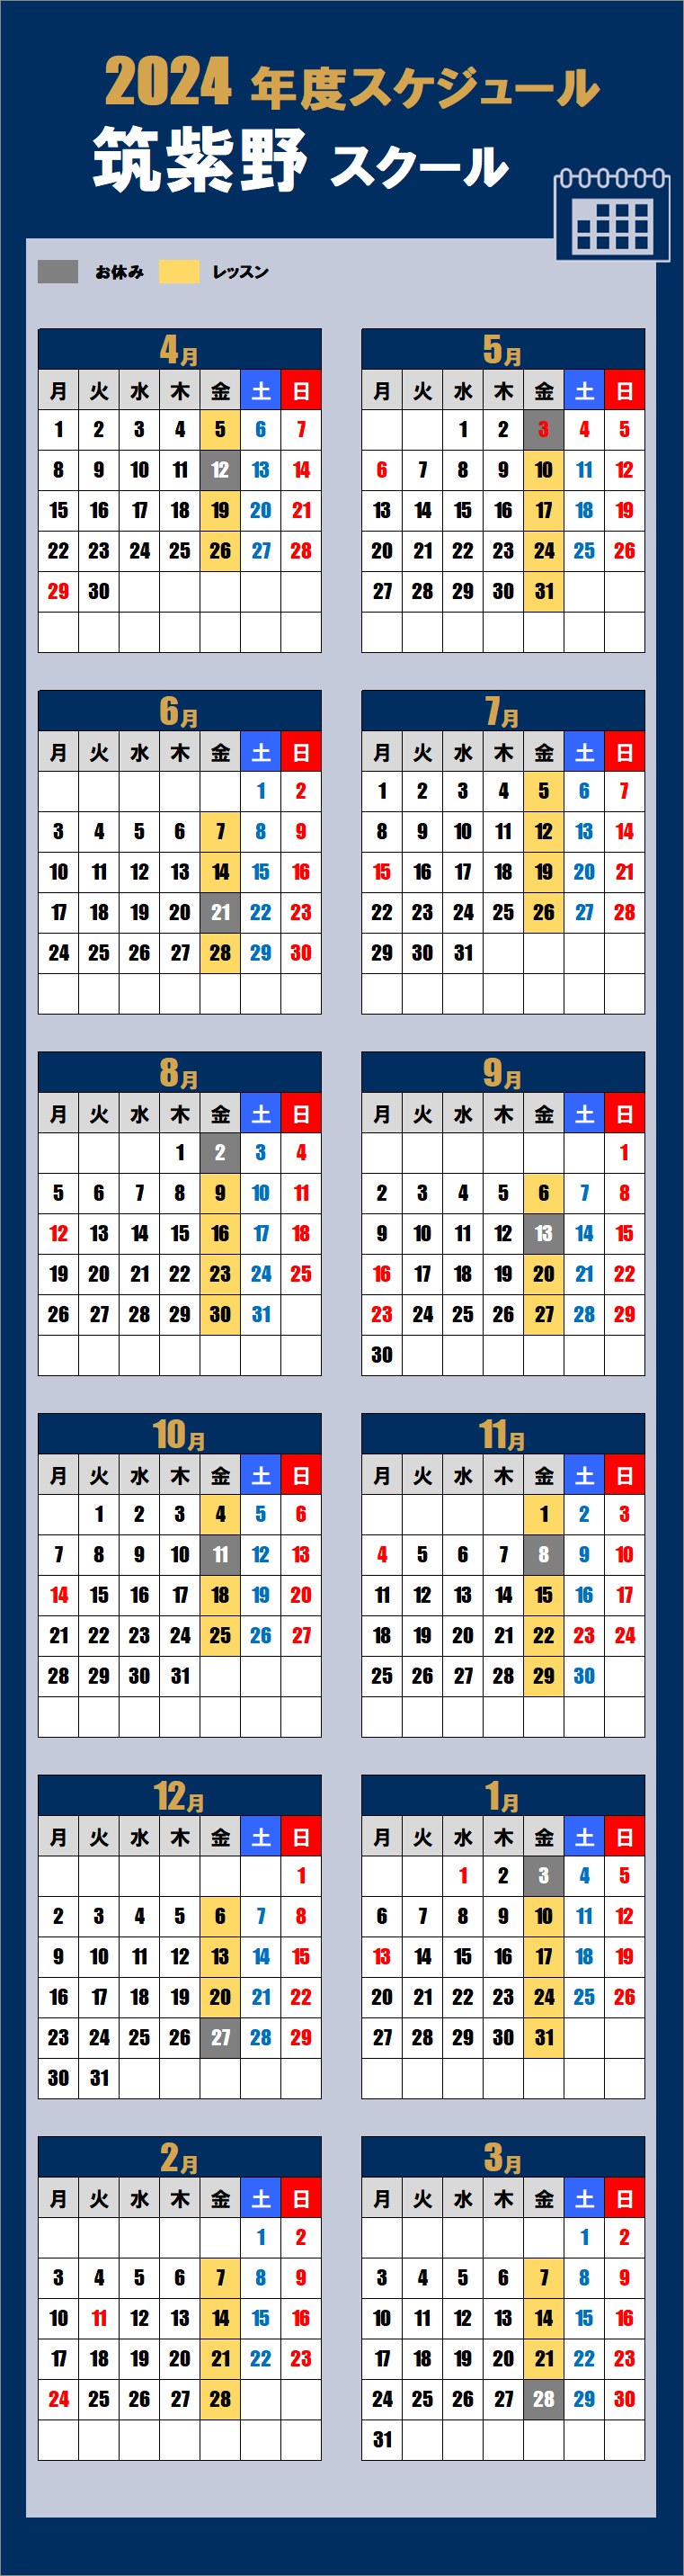 2024筑紫野スクールカレンダー